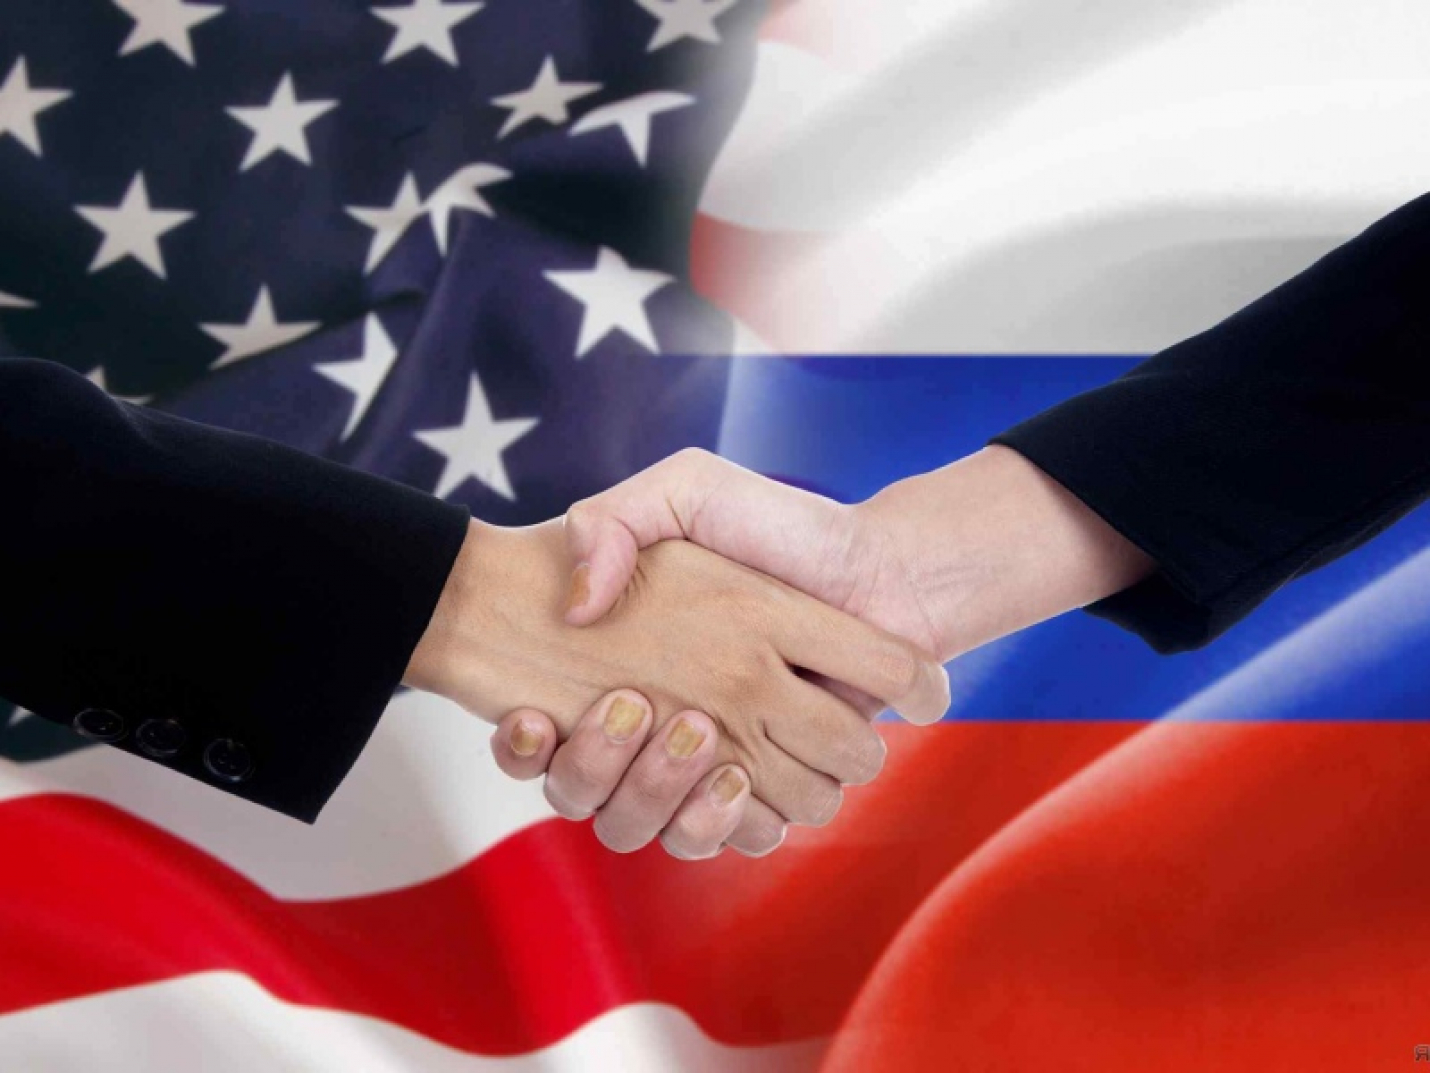 Посол России в США: контртеррористическое сотрудничество Москвы и Вашингтона может спасти сотни жизней